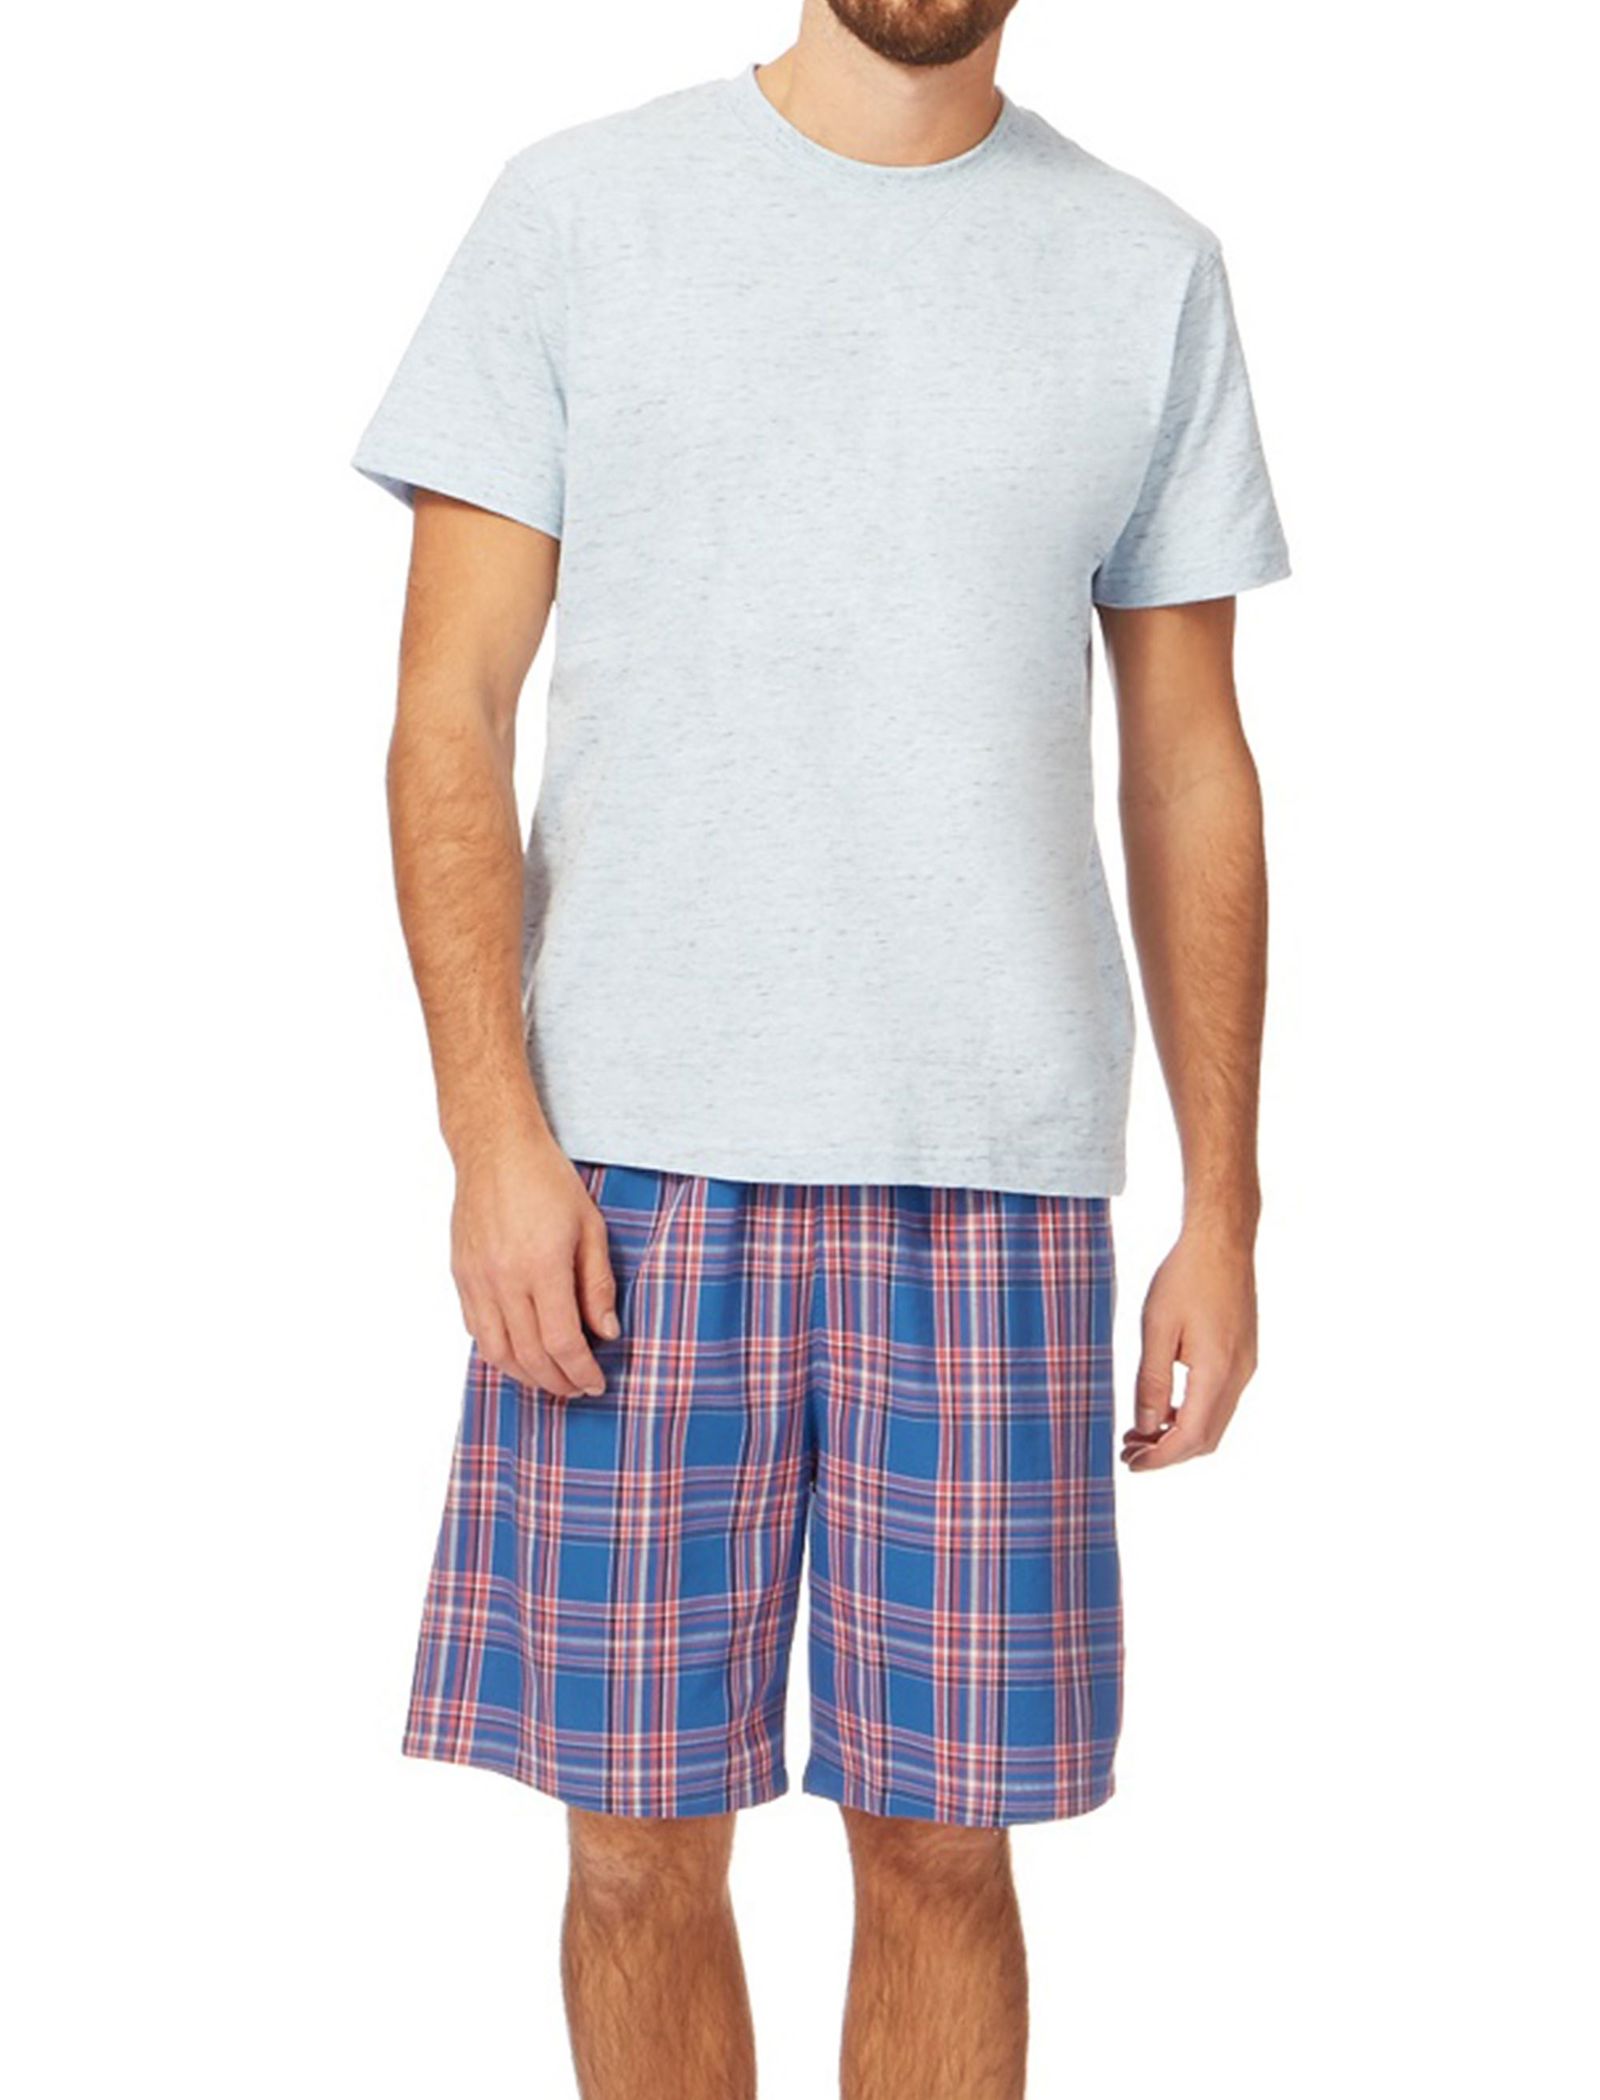 تی شرت و شلوارک راحتی نخی مردانه - منتری - طوسي و آبي - 1